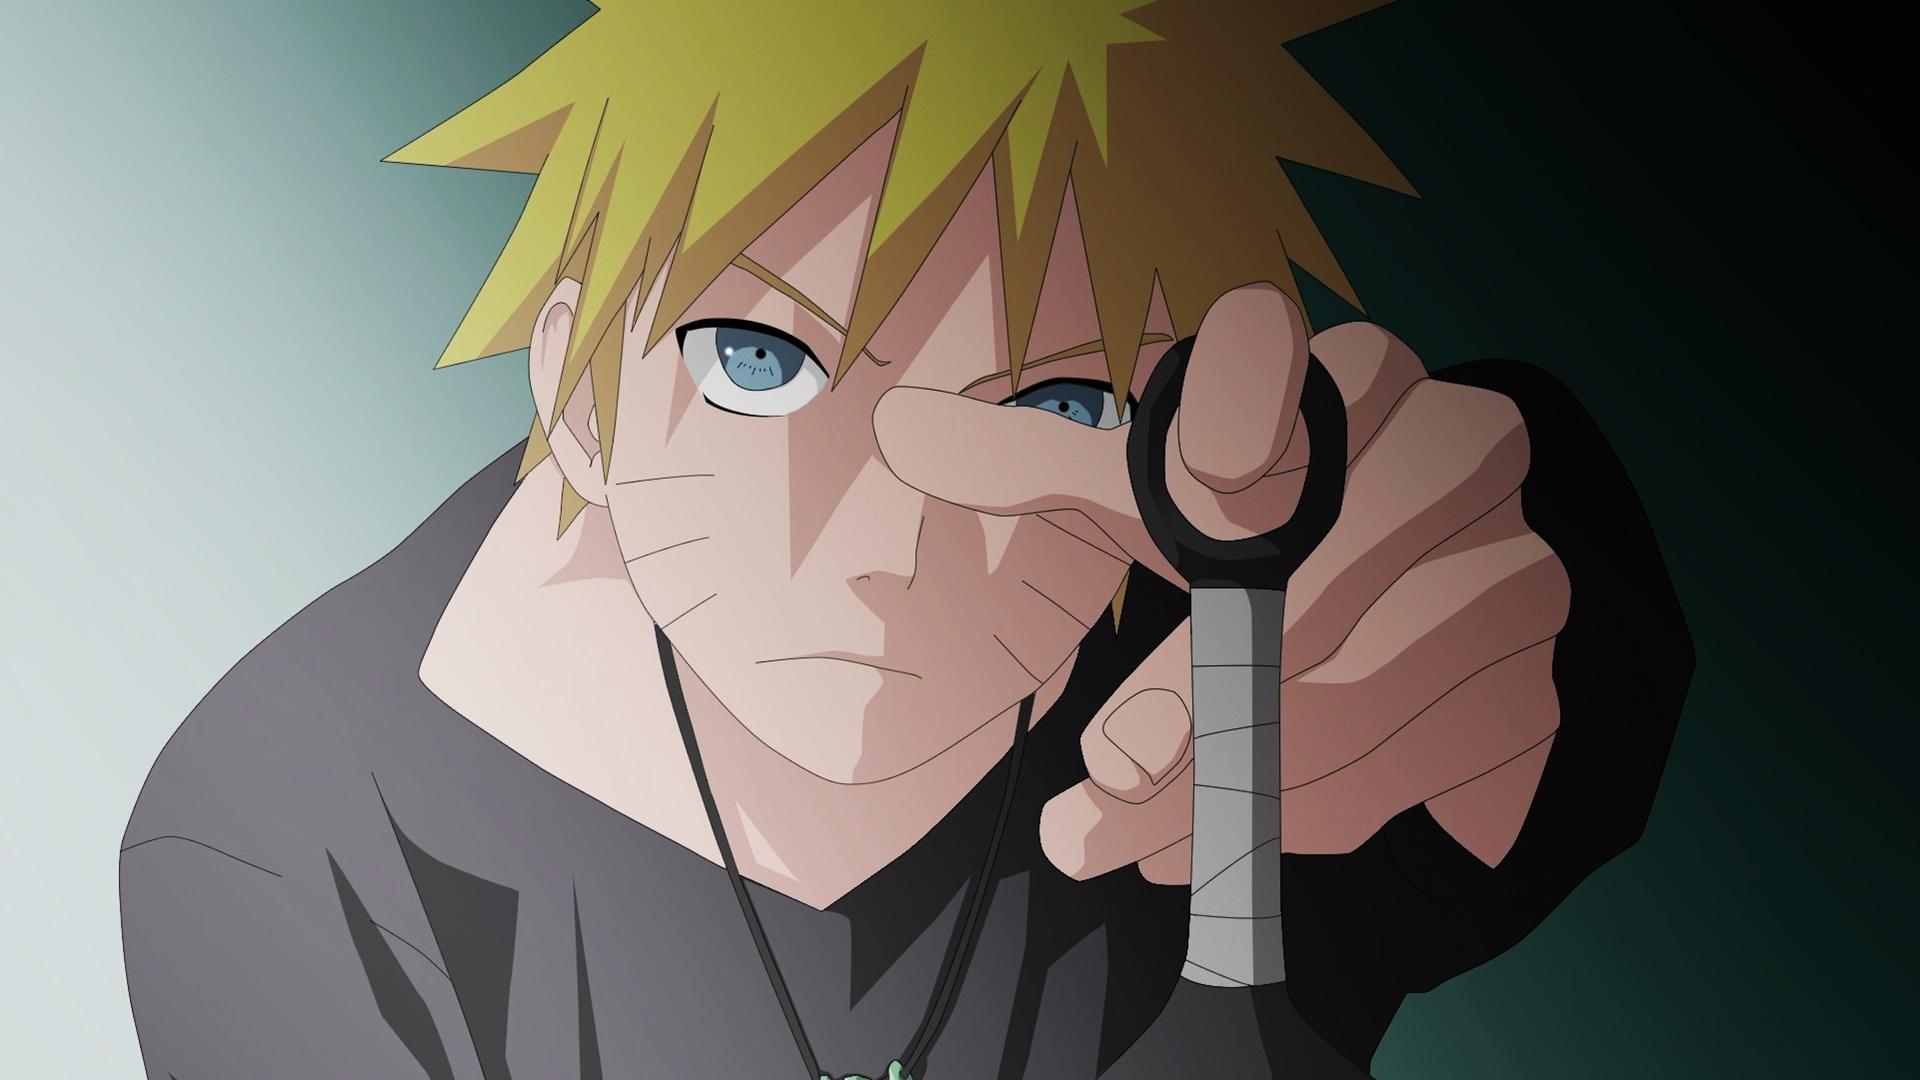 El fin de una era: Hoy se emitió el último capítulo de Naruto - La